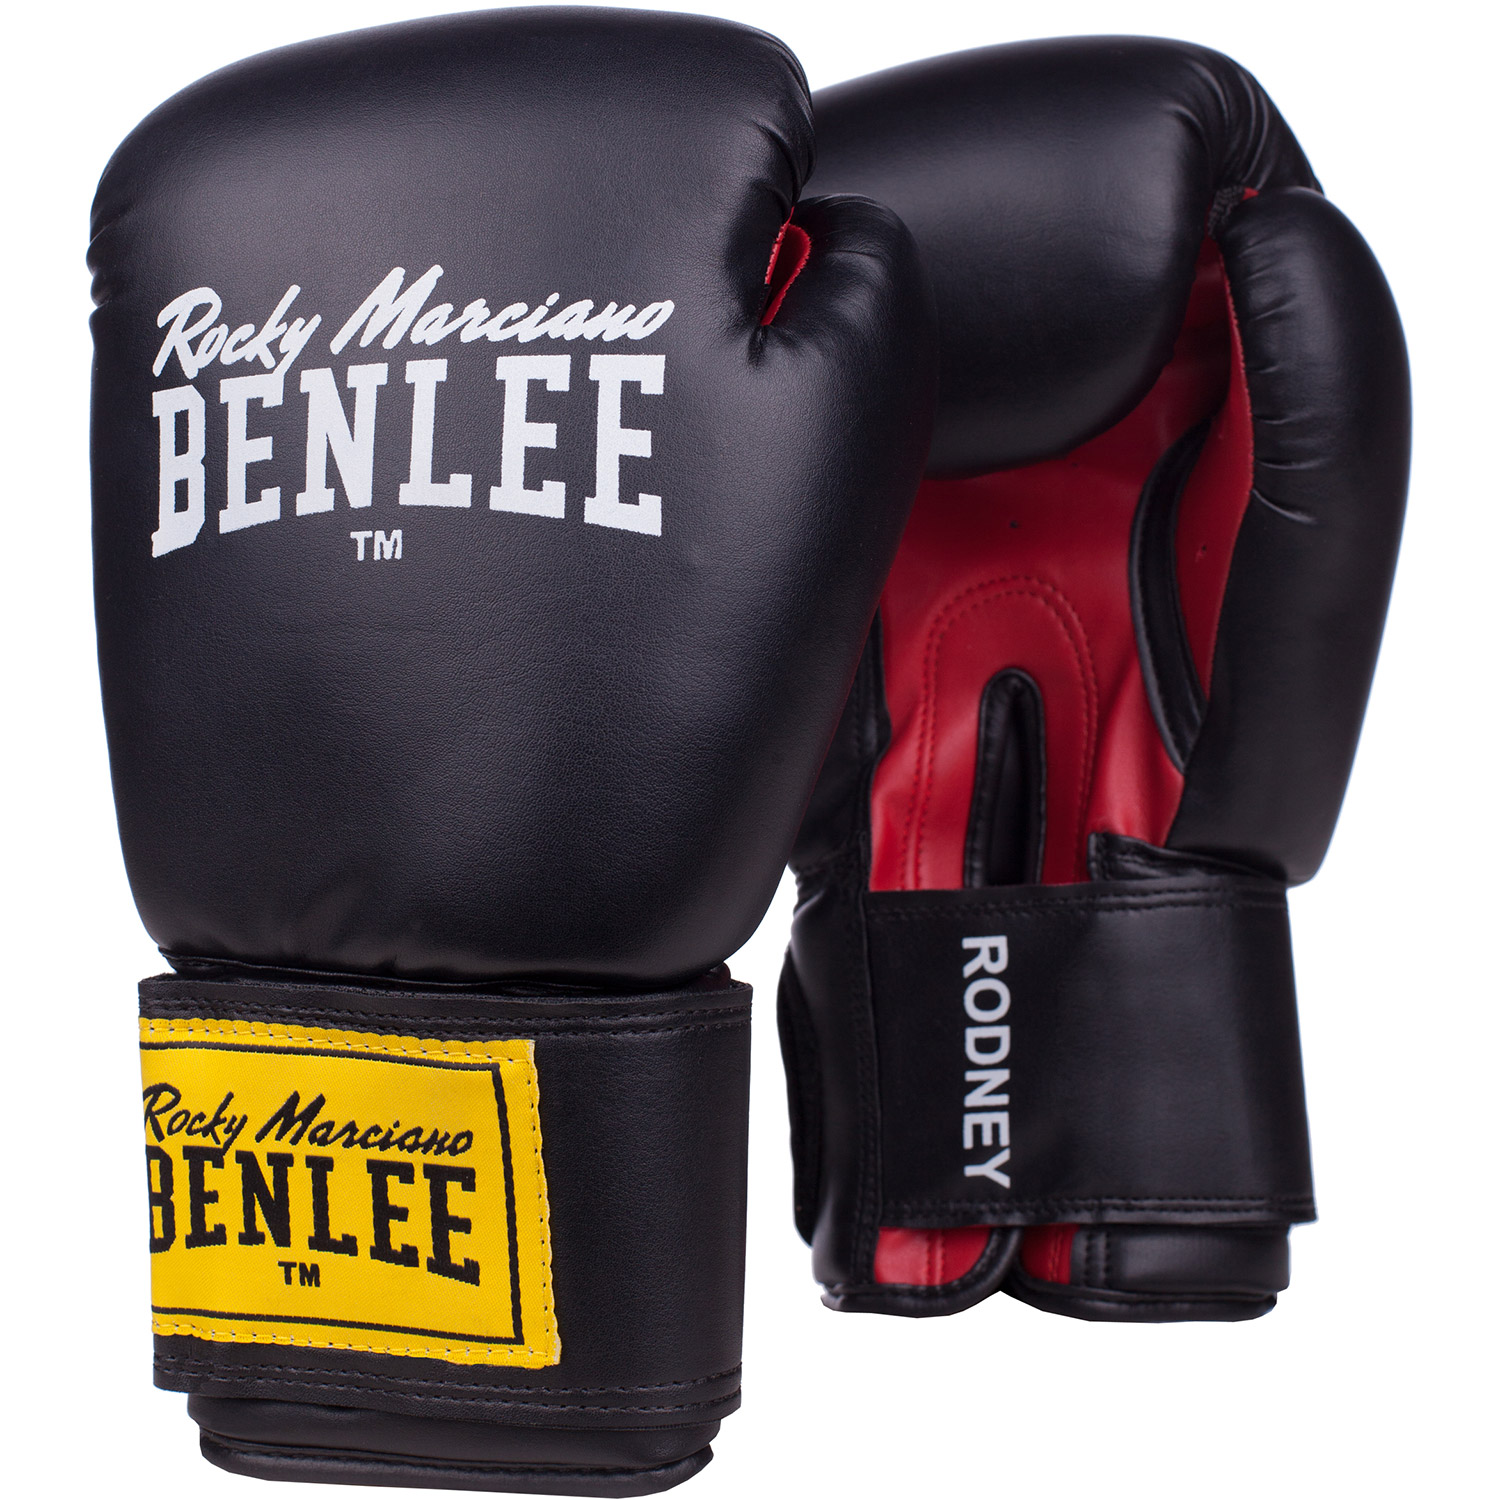 Benlee Rodney boxing gloves 16 oz black/red